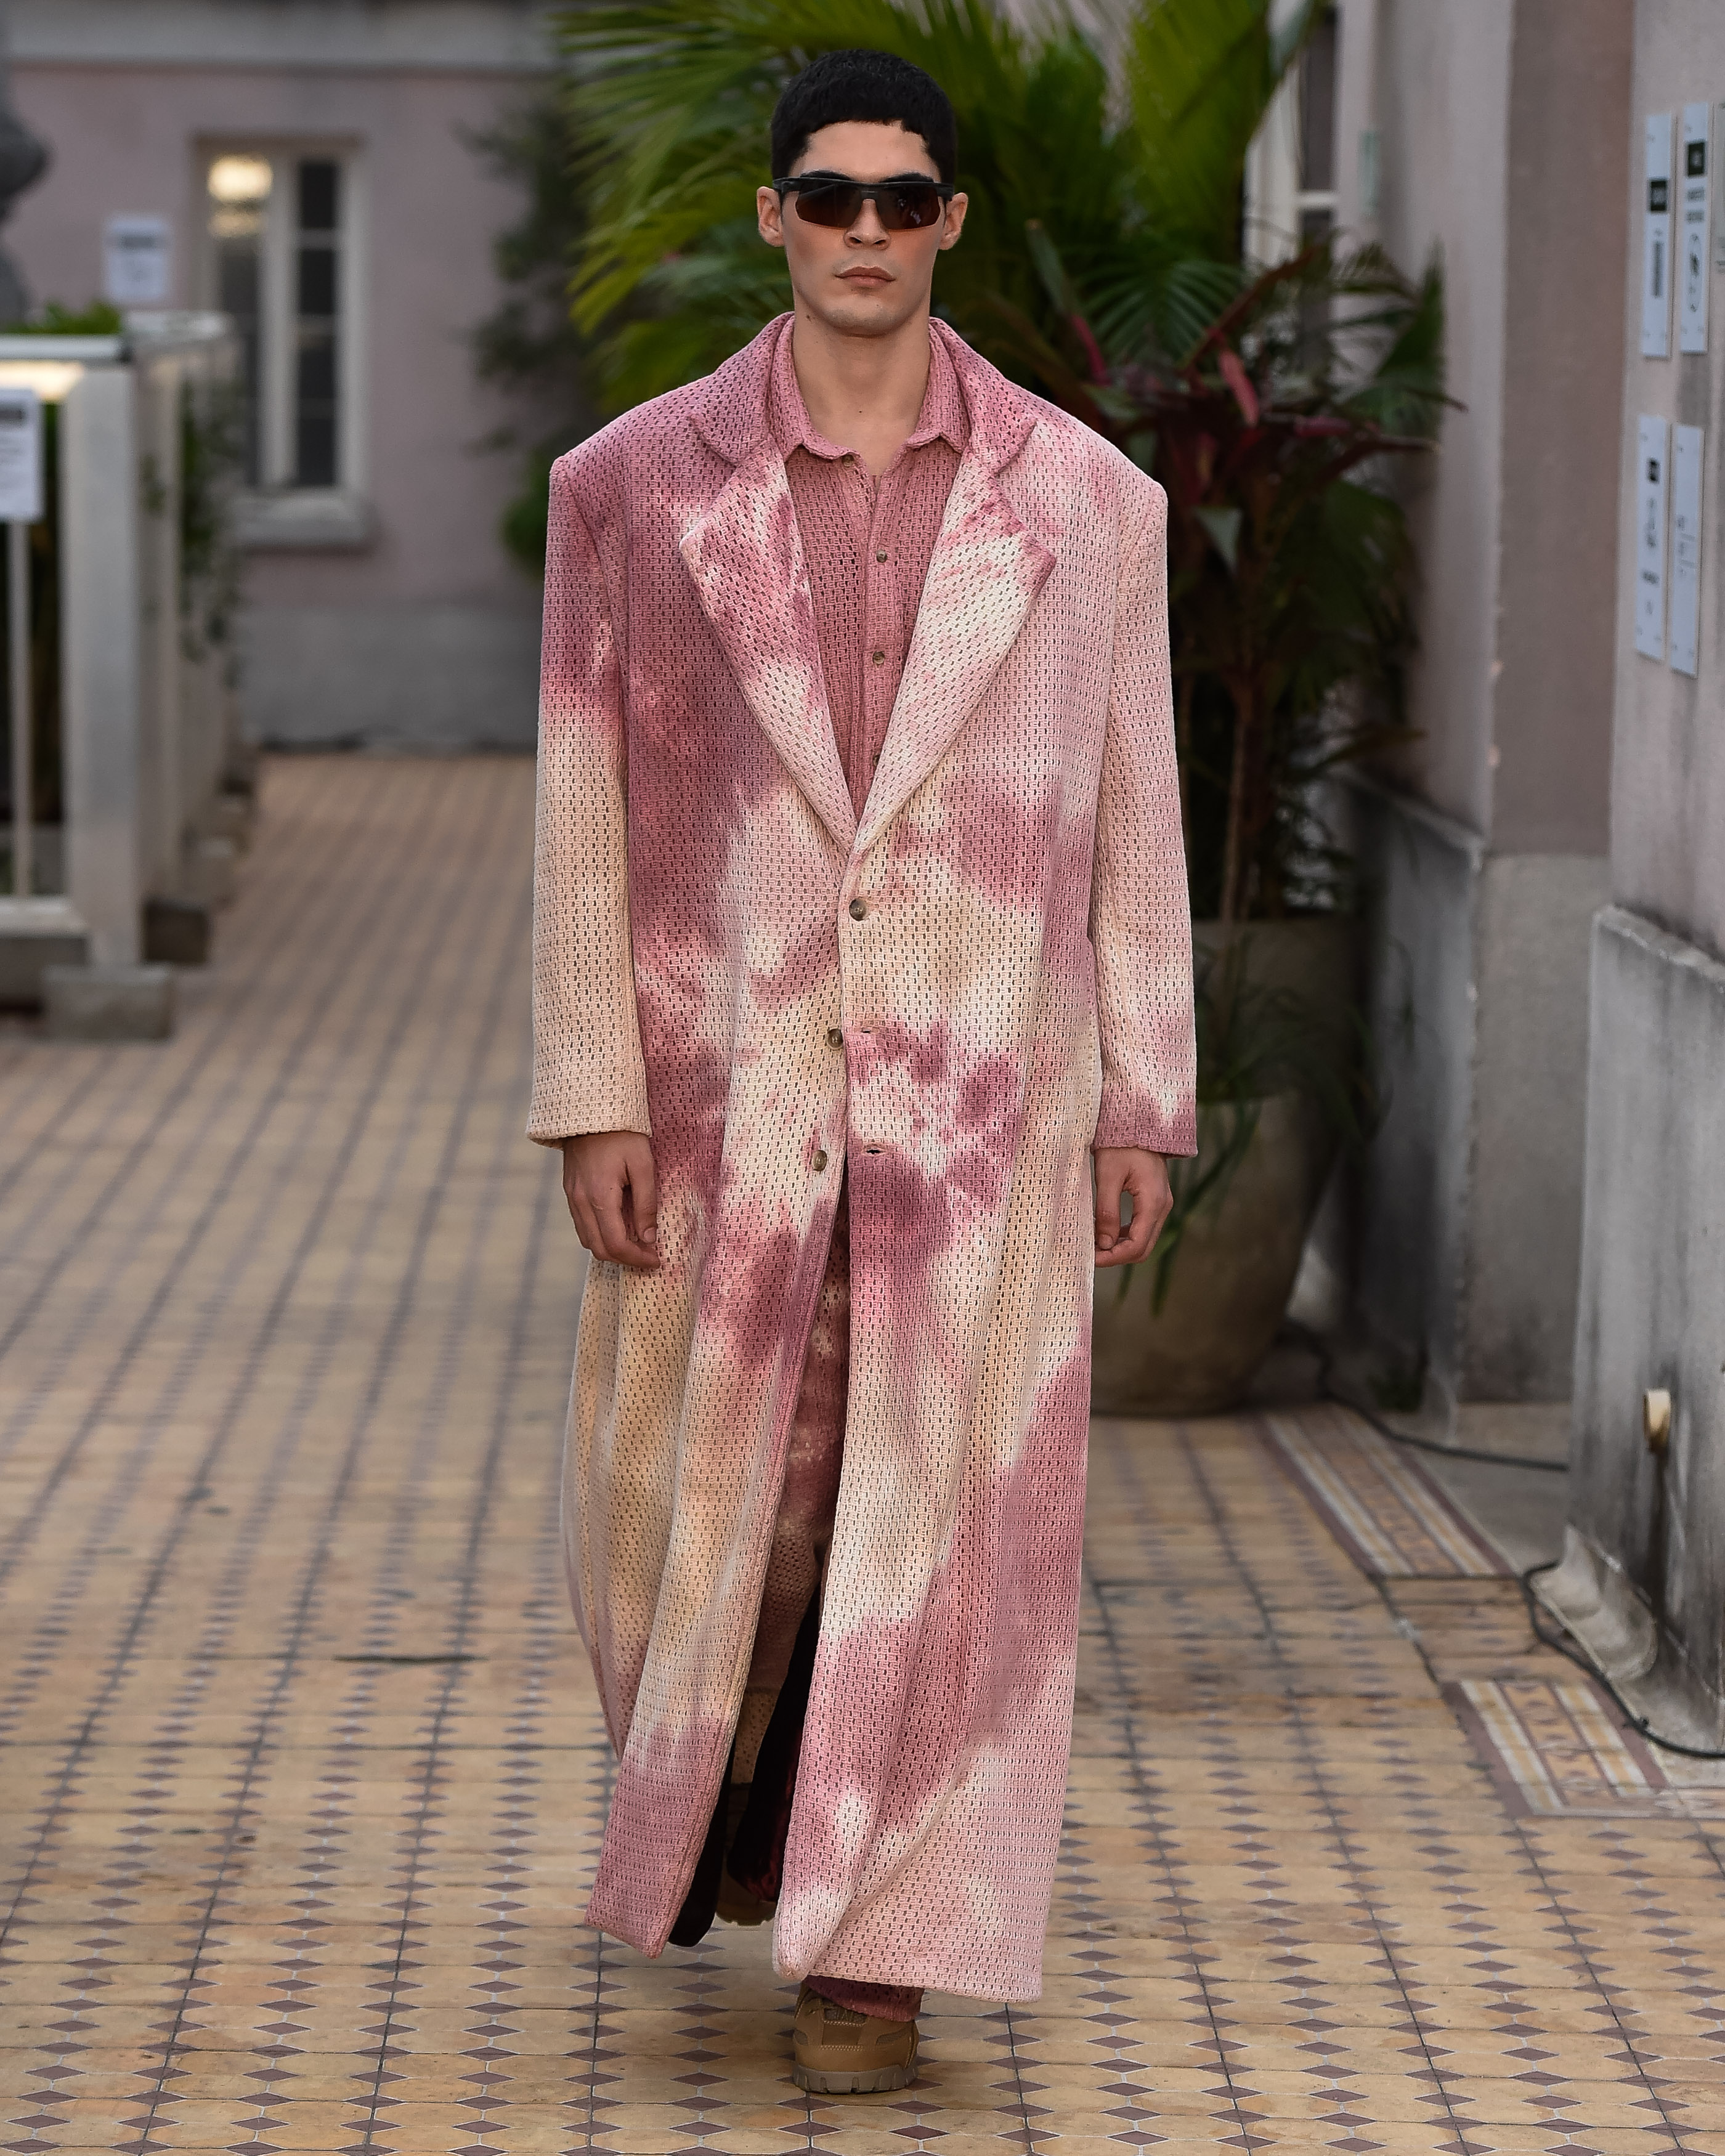 Modelo com casaco tie-dye em tons rosas e um óculos marcando o look.